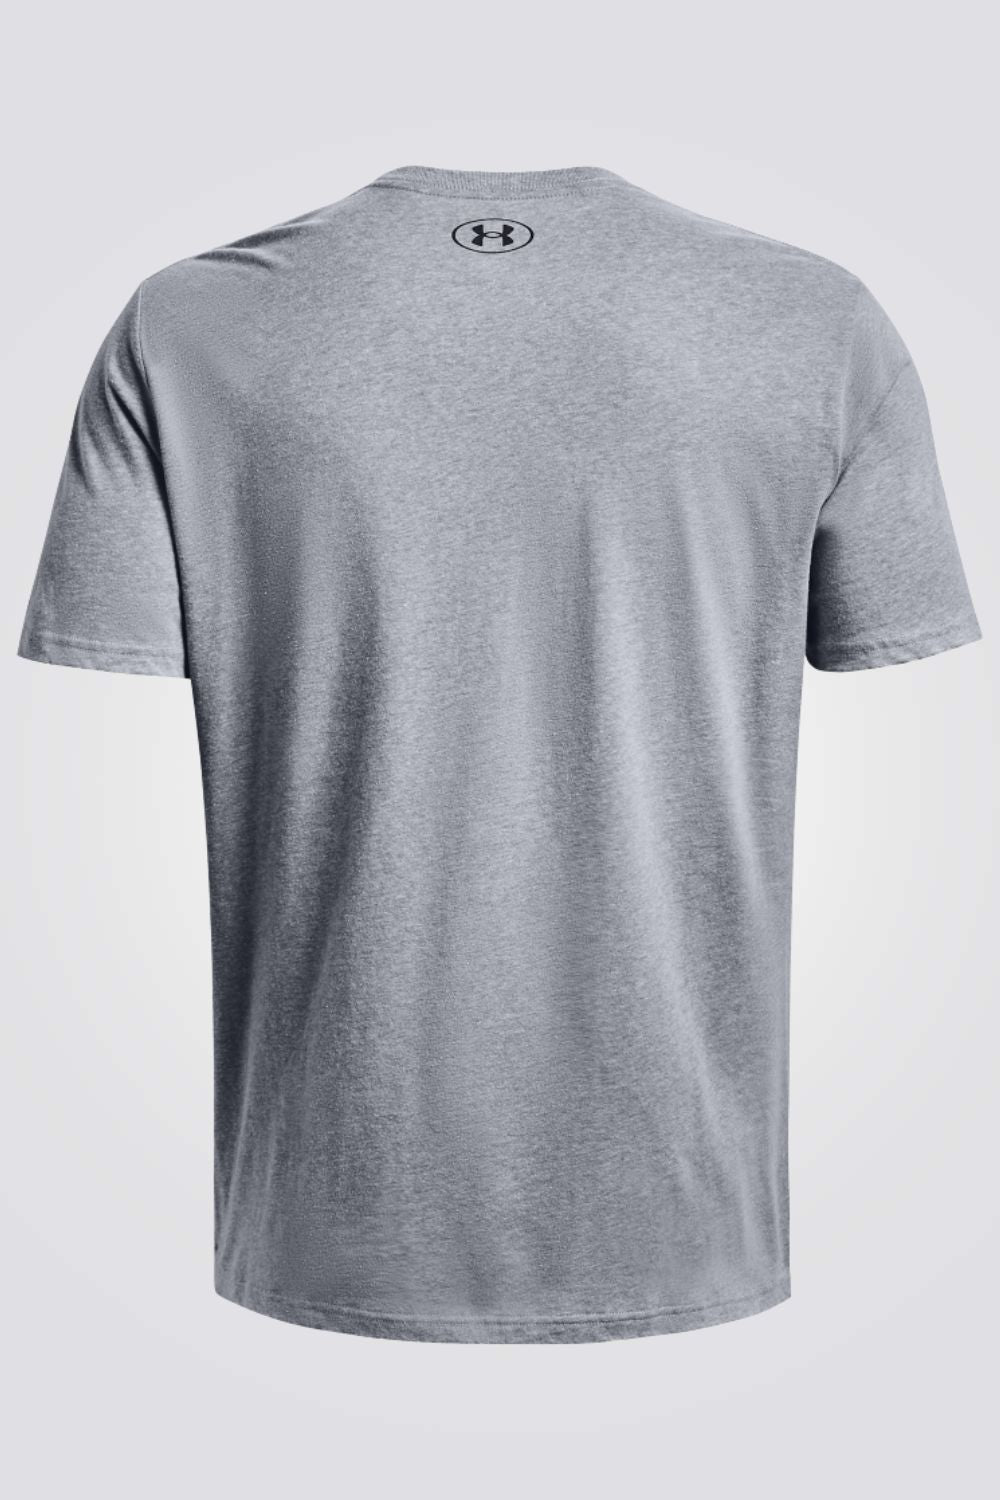 חולצה מבית המותג UNDER ARMOUR , עשויה מבד נוח ושומרת על הגוף שלך מאורר לאורך כל האימון.